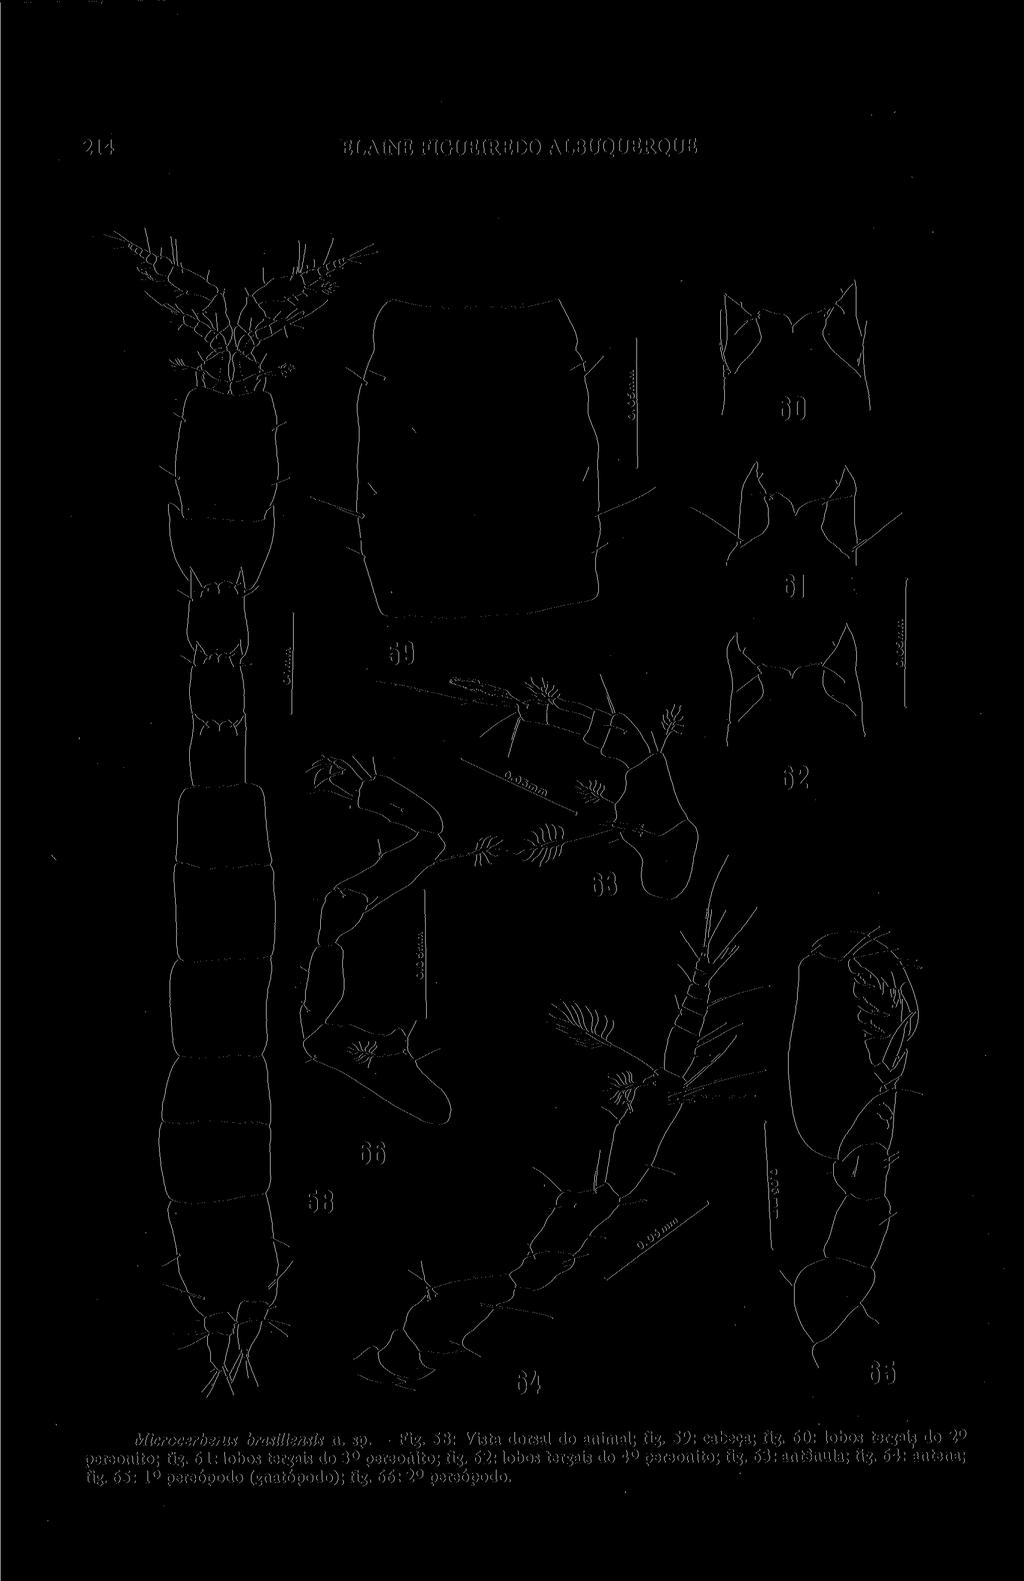 214 ELAINE FIGUEIREDO ALBUQUERQUE Microcerberus brasüiensis n. sp. - Fig. 58: Vista dorsal do animal; fig. 59: cabeça; fig. 60: lobos tergais do 2 o pereonito; fig.